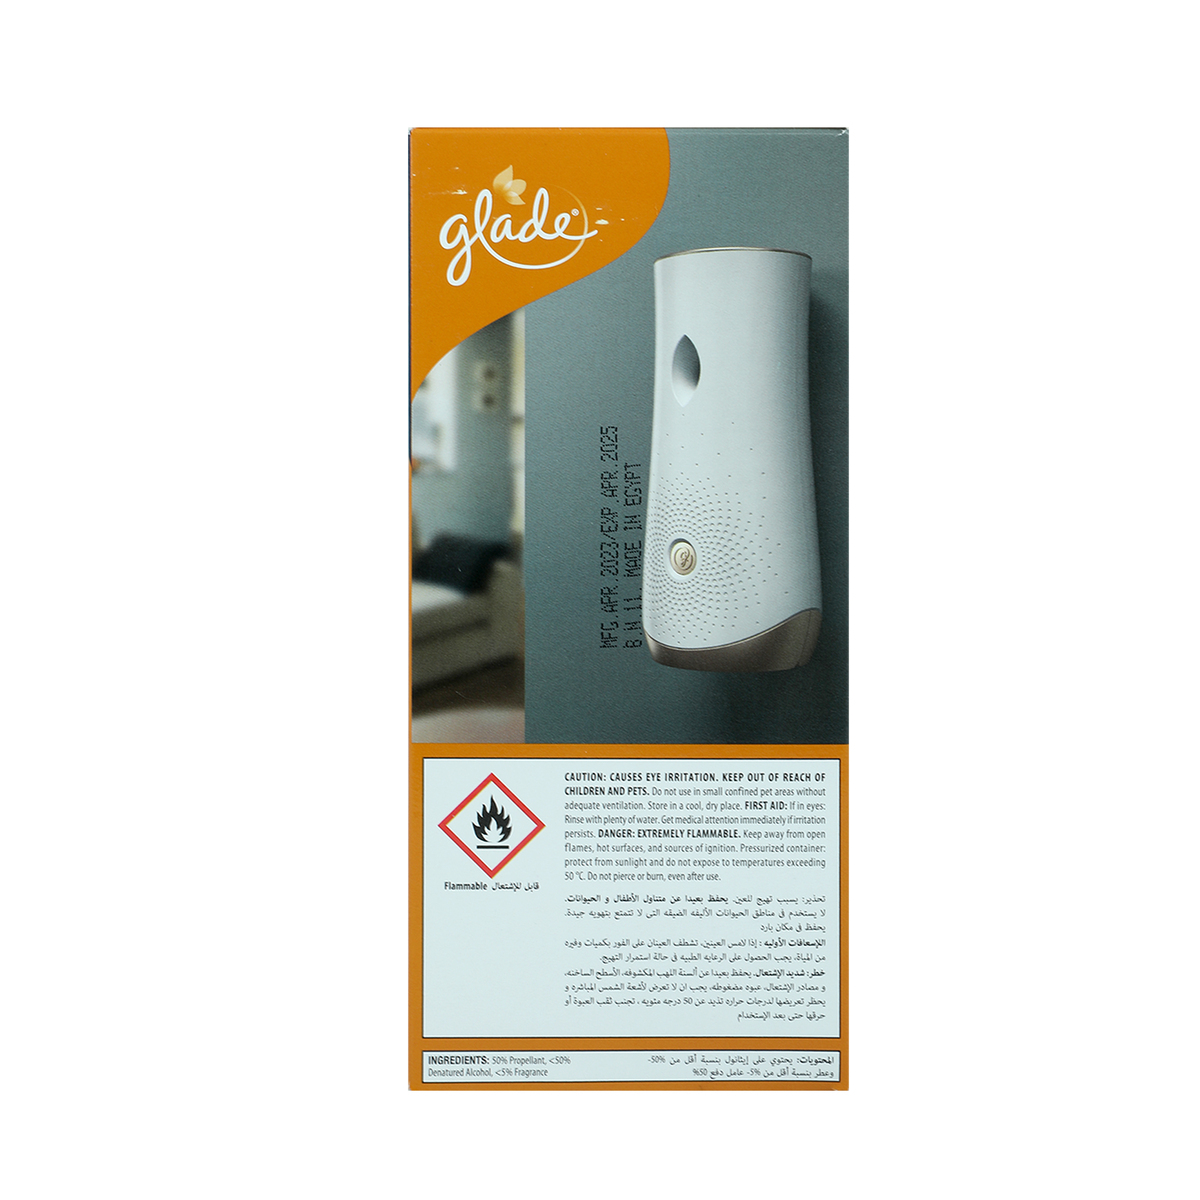 Glade Automatic Spray Unit + Refill Elegant Amber & Oud 269ml